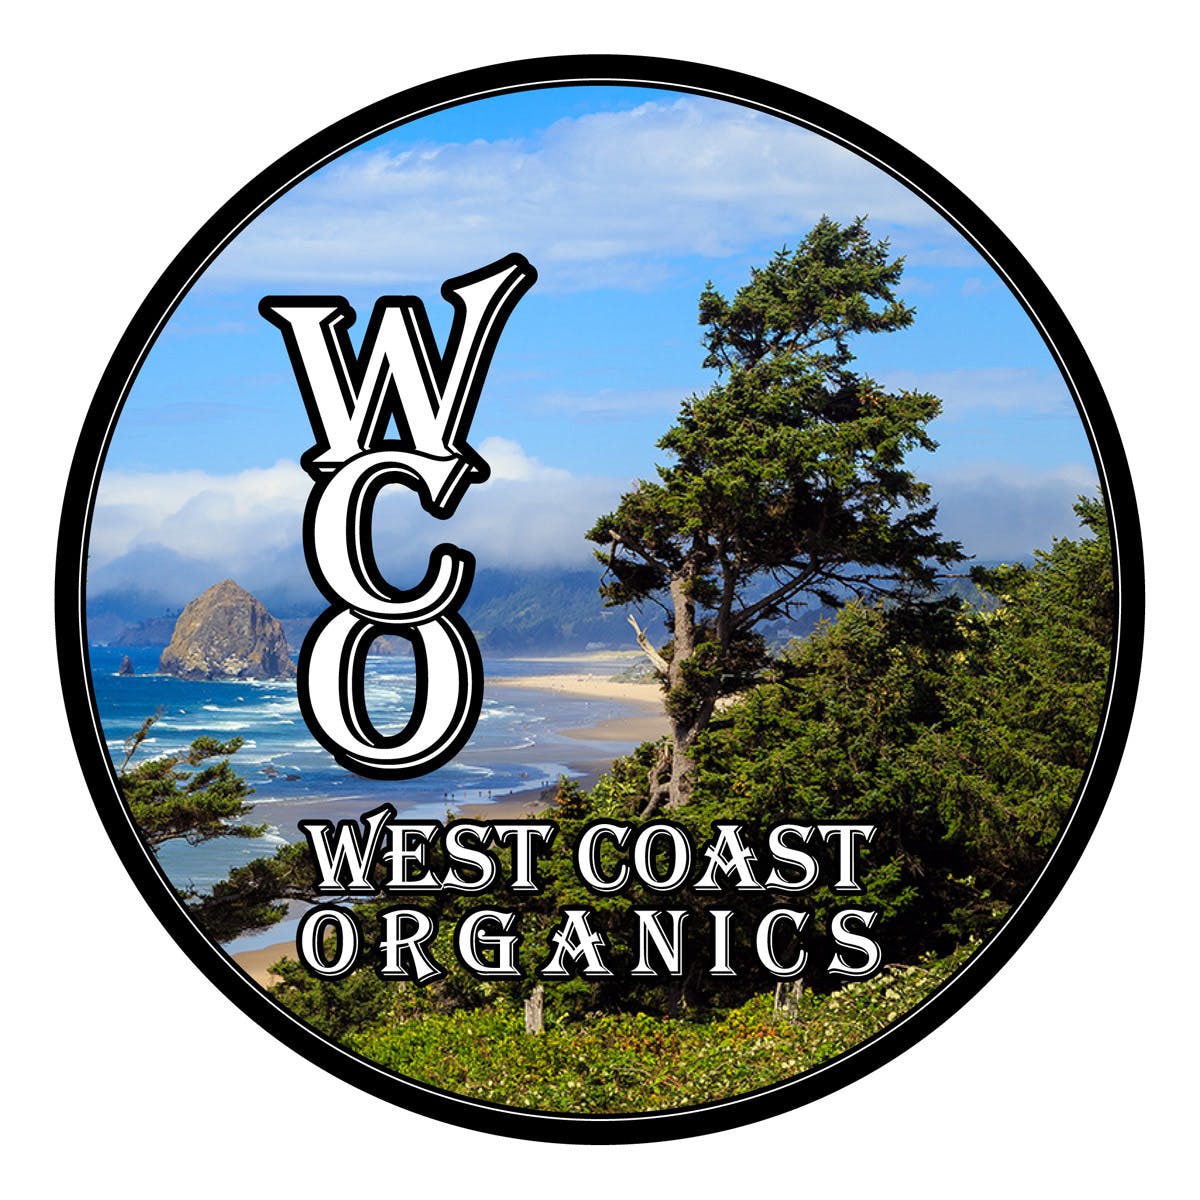 West Coast Organics - Medical Marijuana Doctors - Cannabizme.com